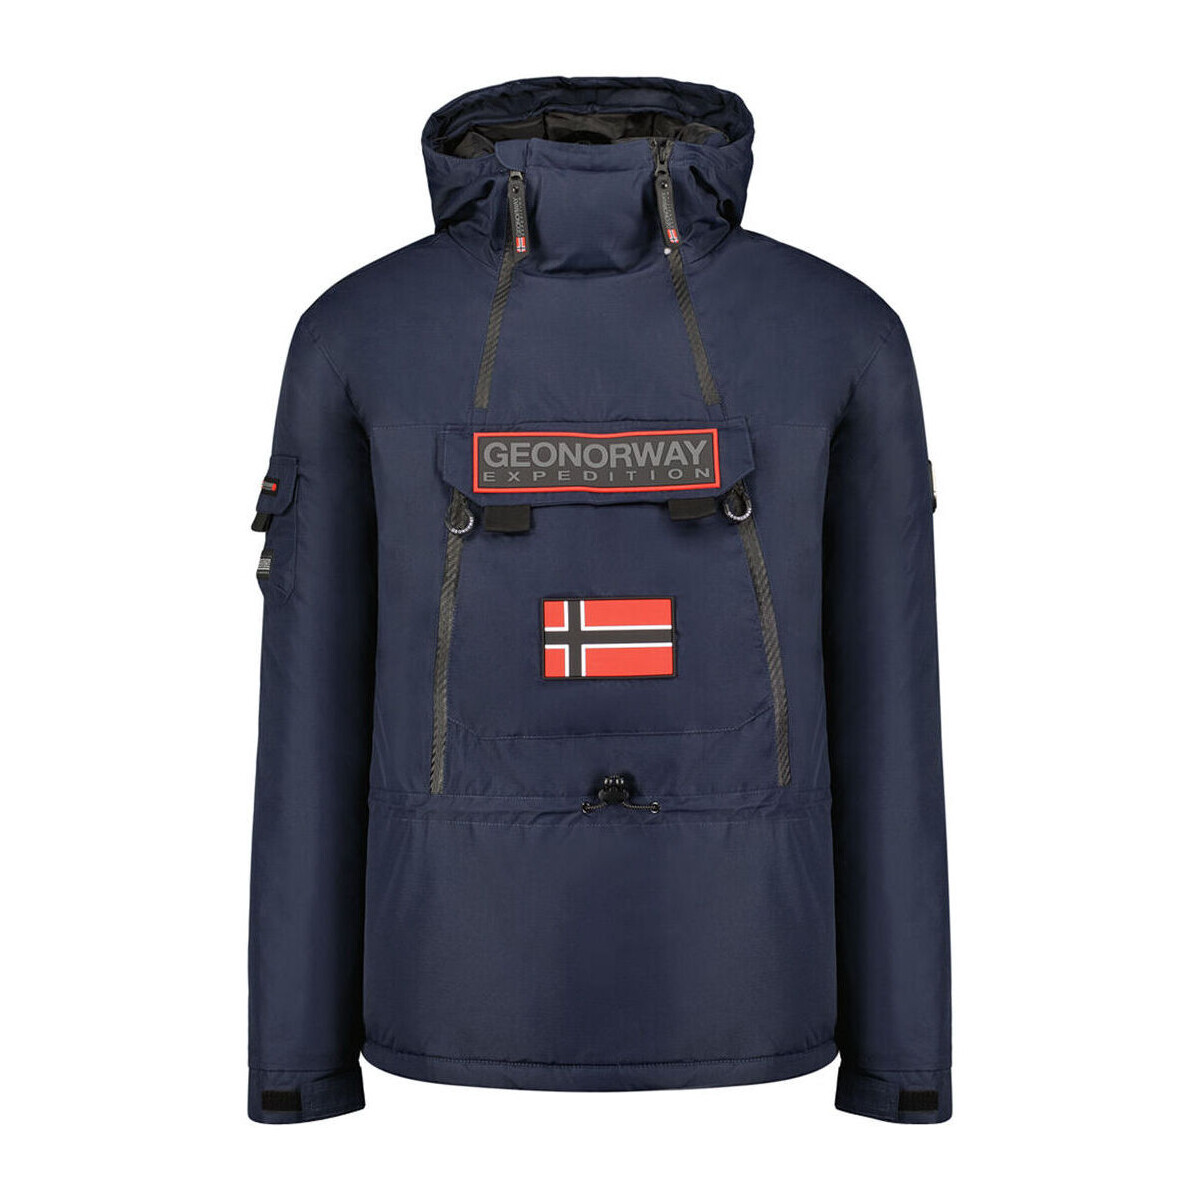 Textil Muži Teplákové bundy Geographical Norway Benyamine054 Man Navy Modrá